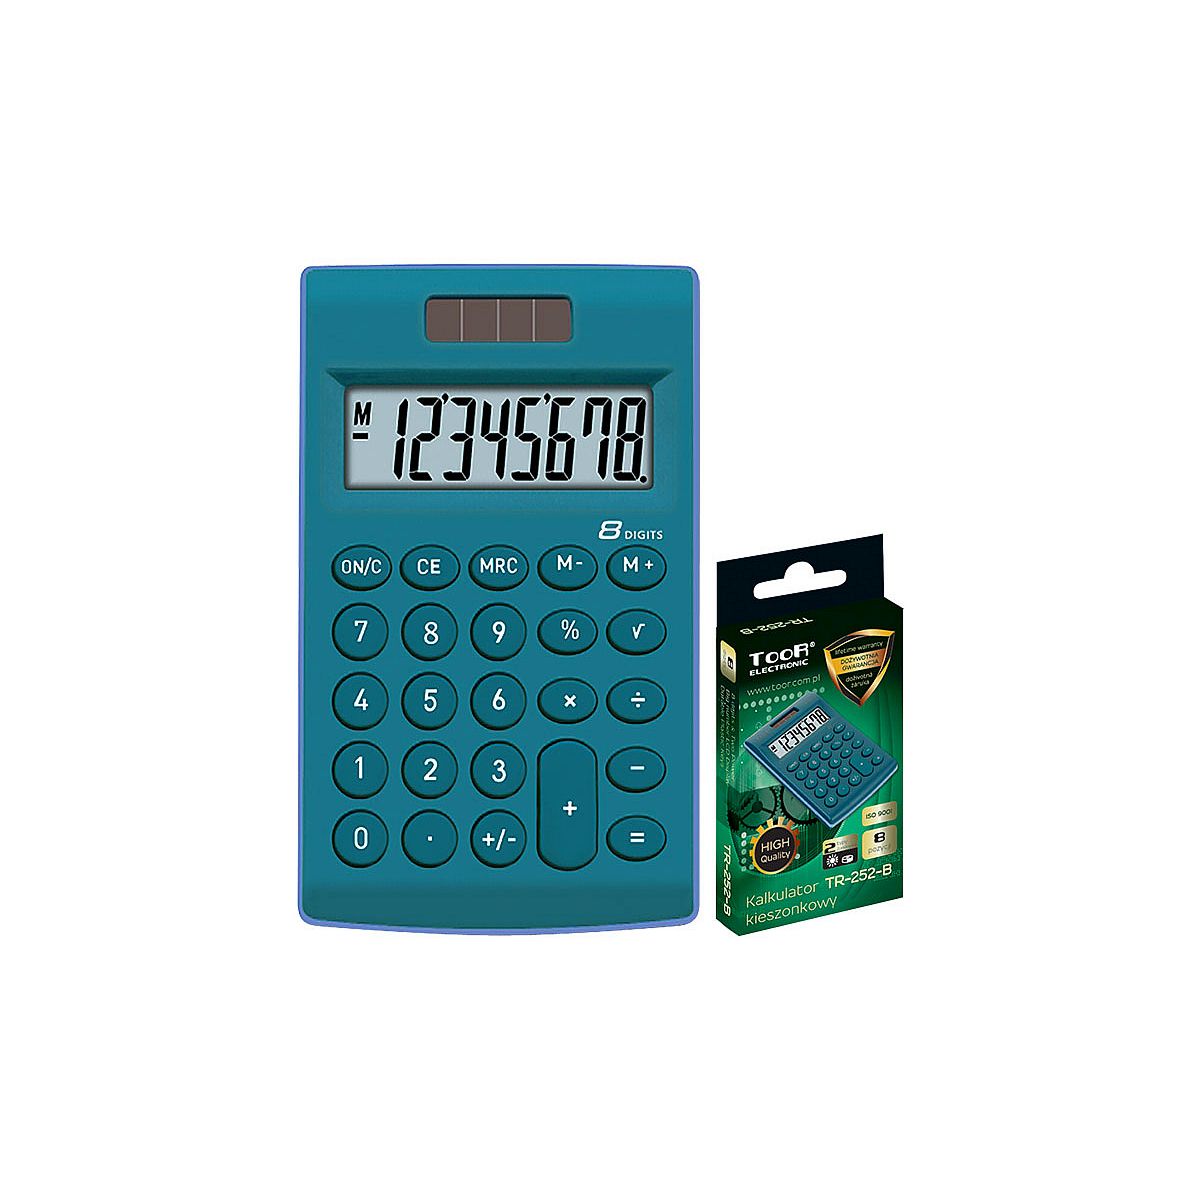 Kalkulator kieszonkowy Toore Electronic (120-1772)